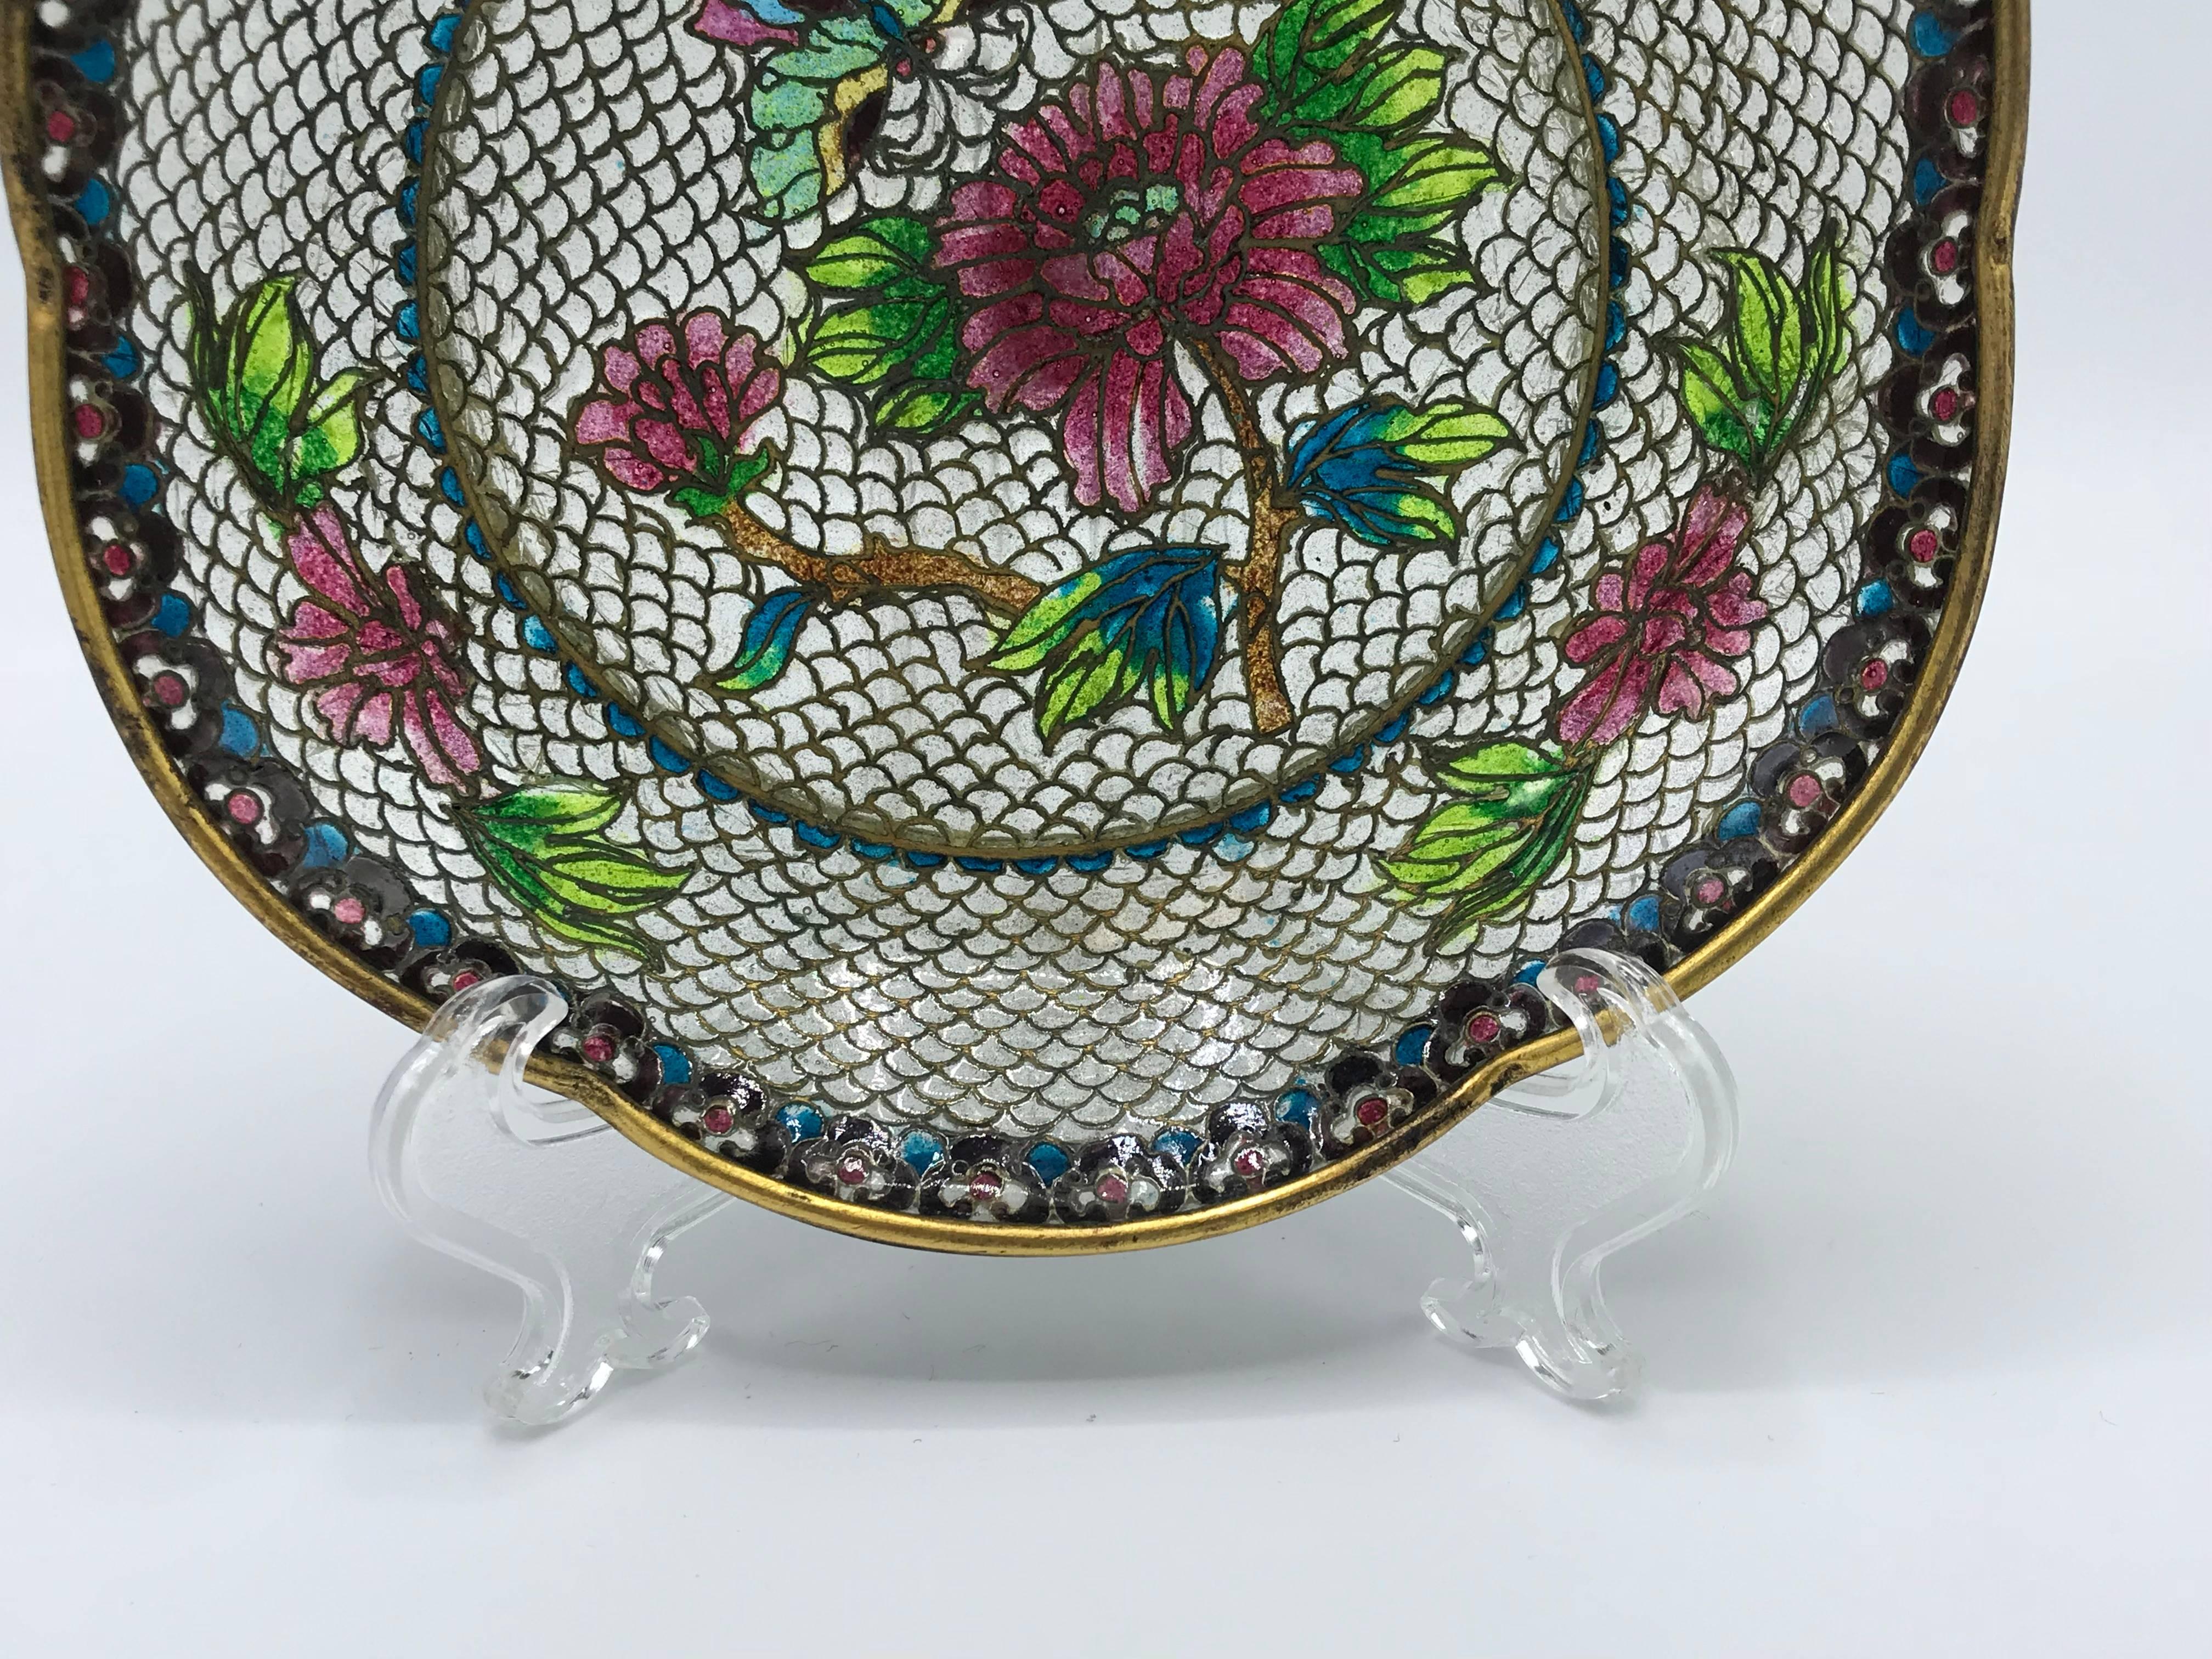 Cloissoné 19th Century French Plique a Jour Cloisonné Mosaic Dish with Floral Motif